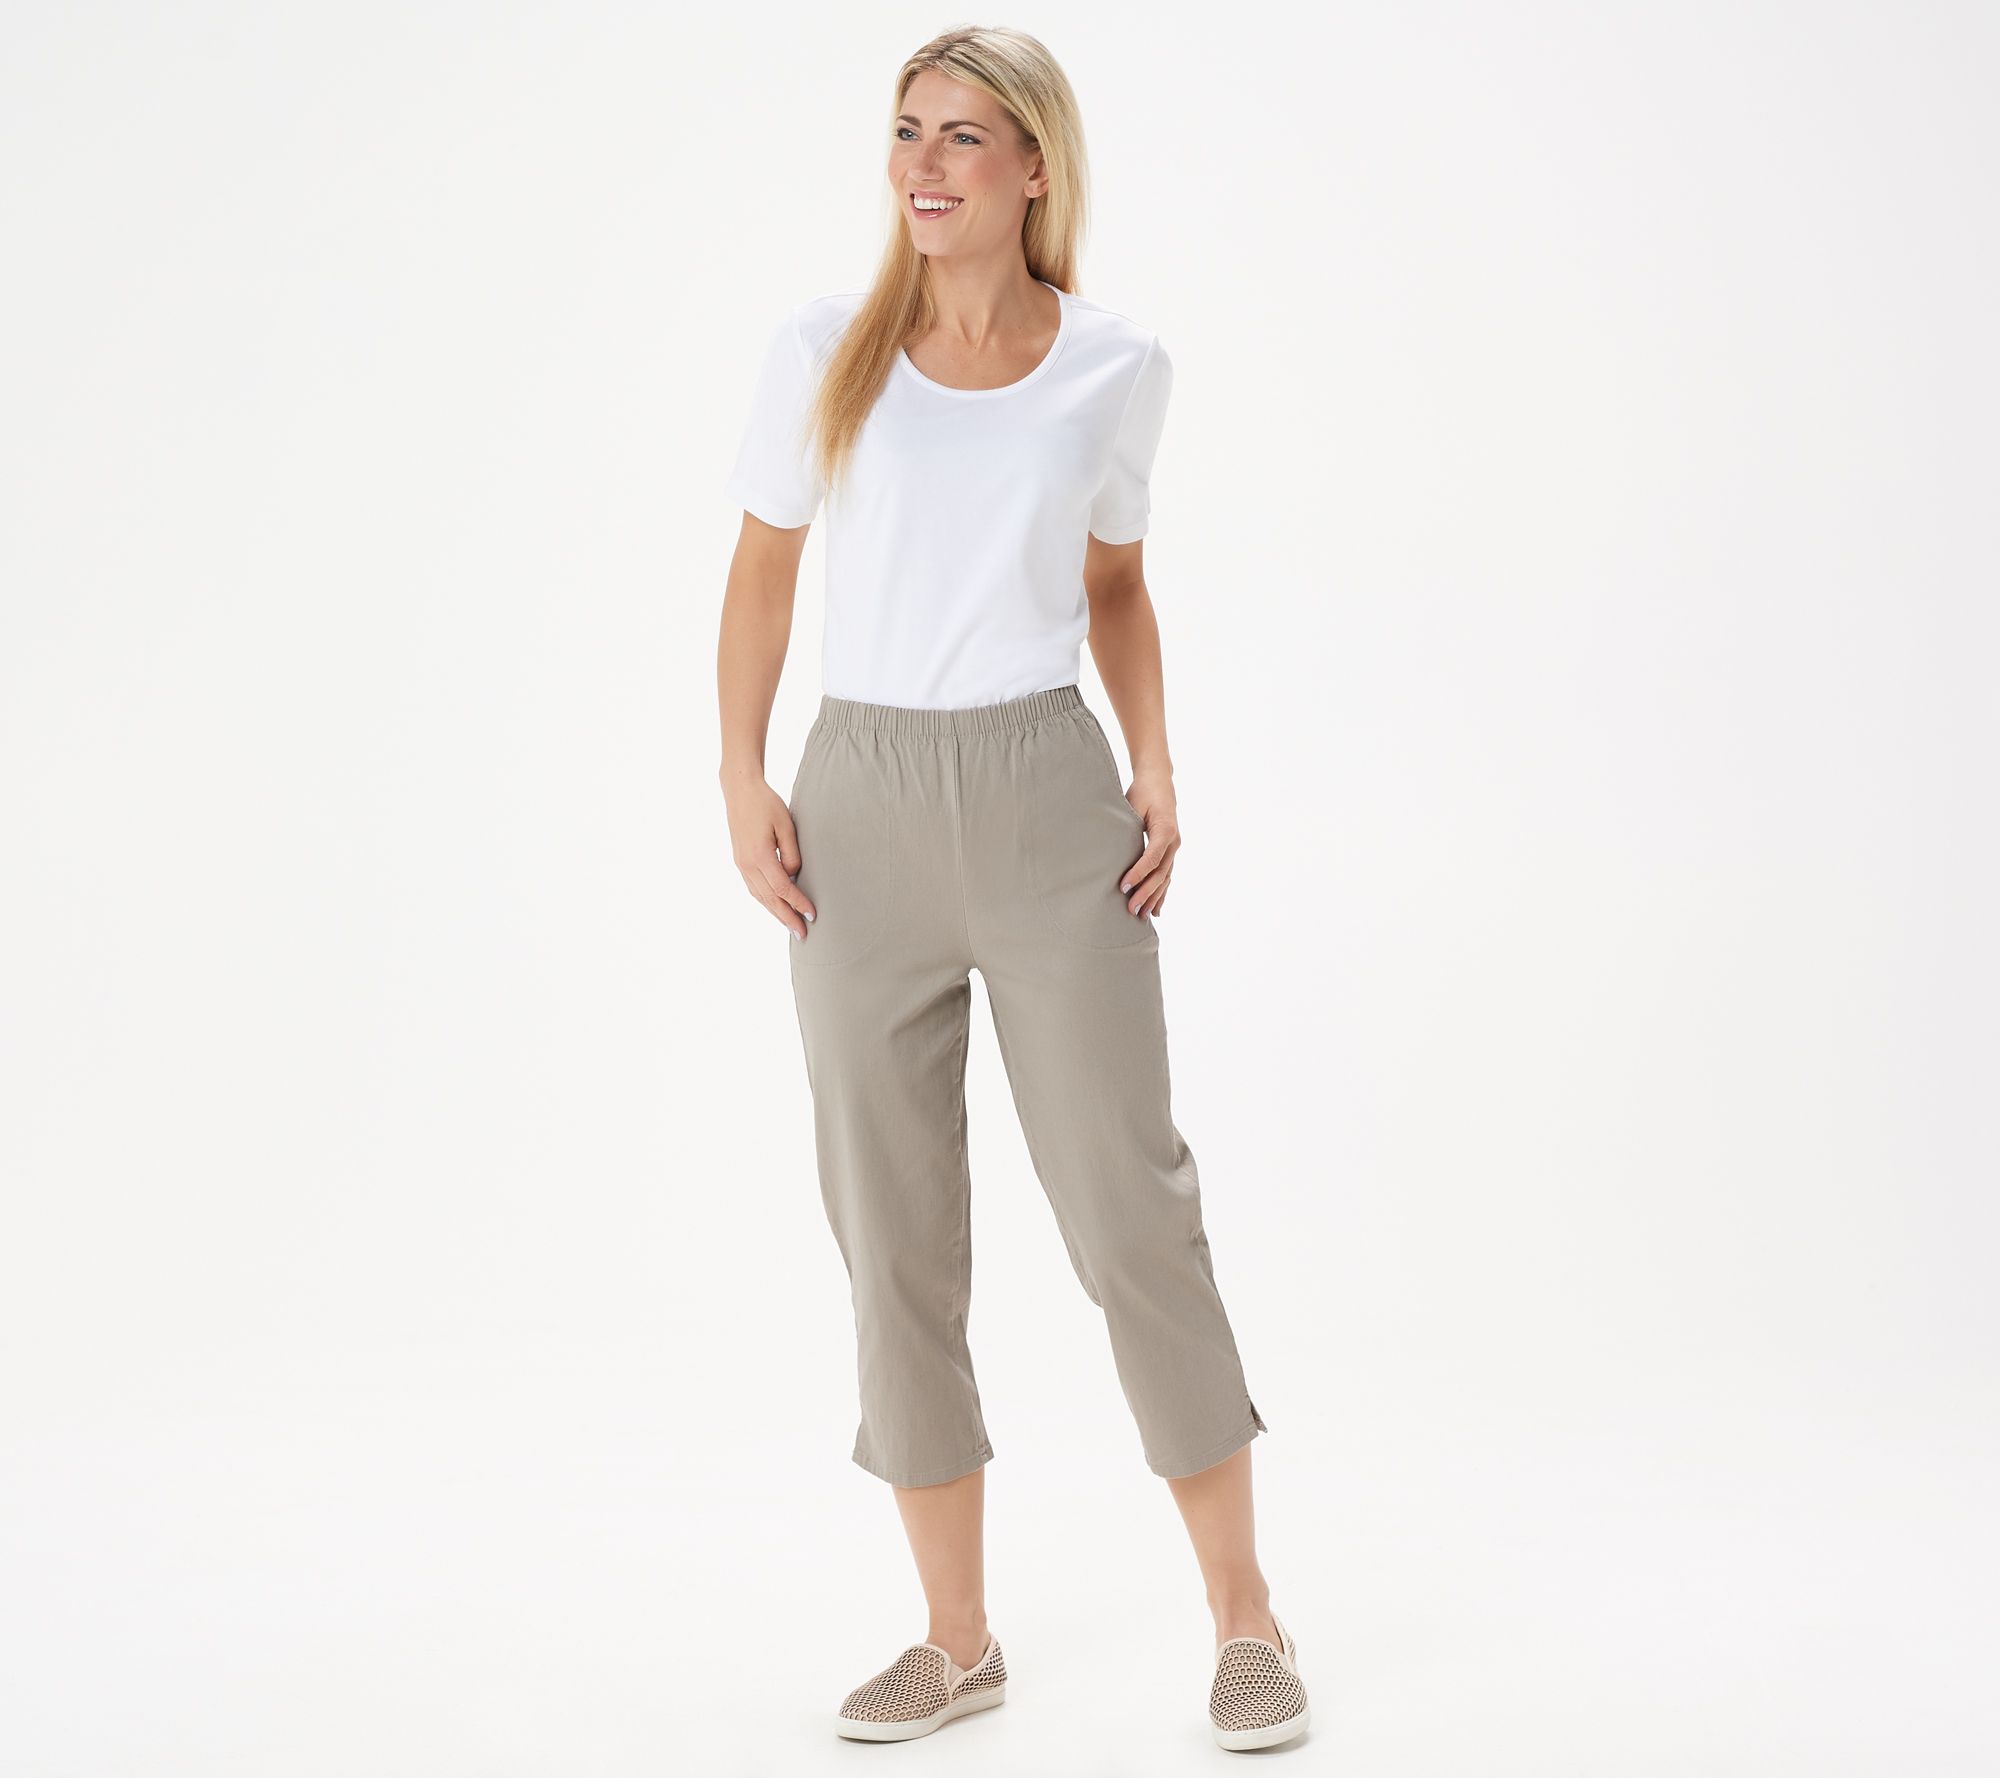 Denim & Co. Original Waist Stretch Capri Pants with Side Pockets - QVC.com